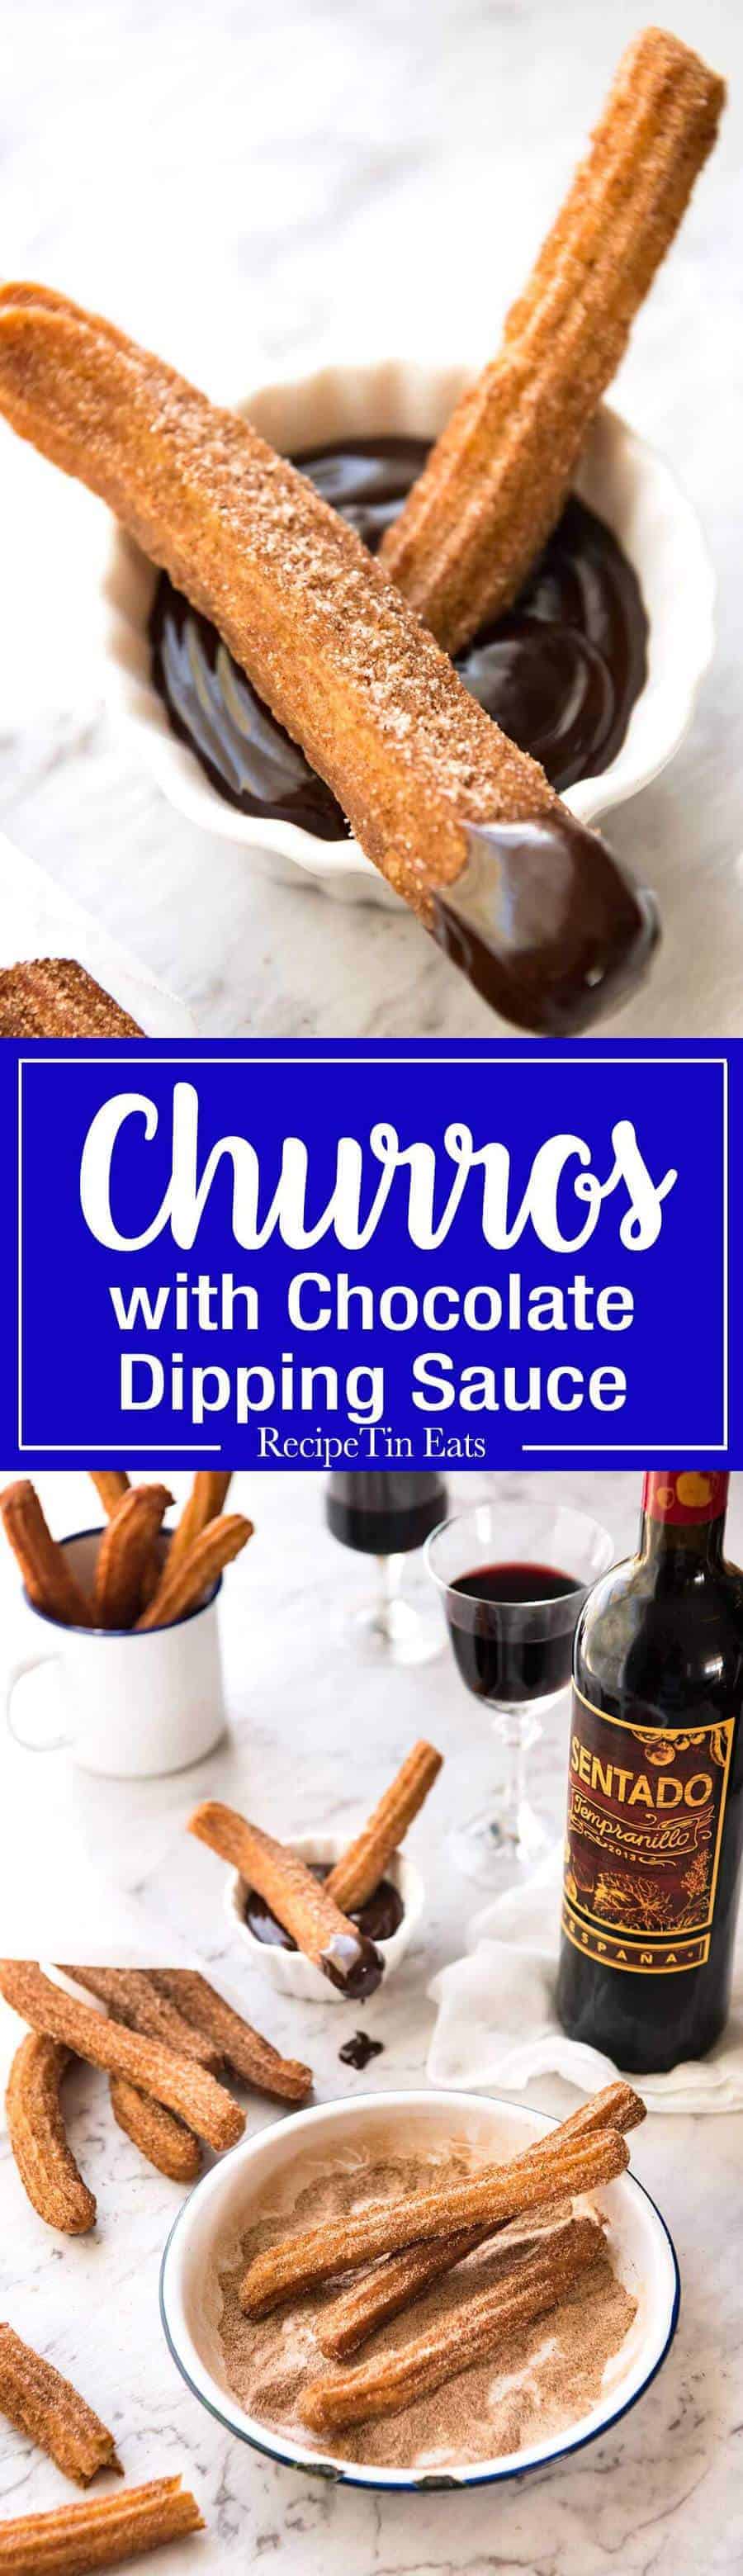 Churros Recipe Recipetin Eats